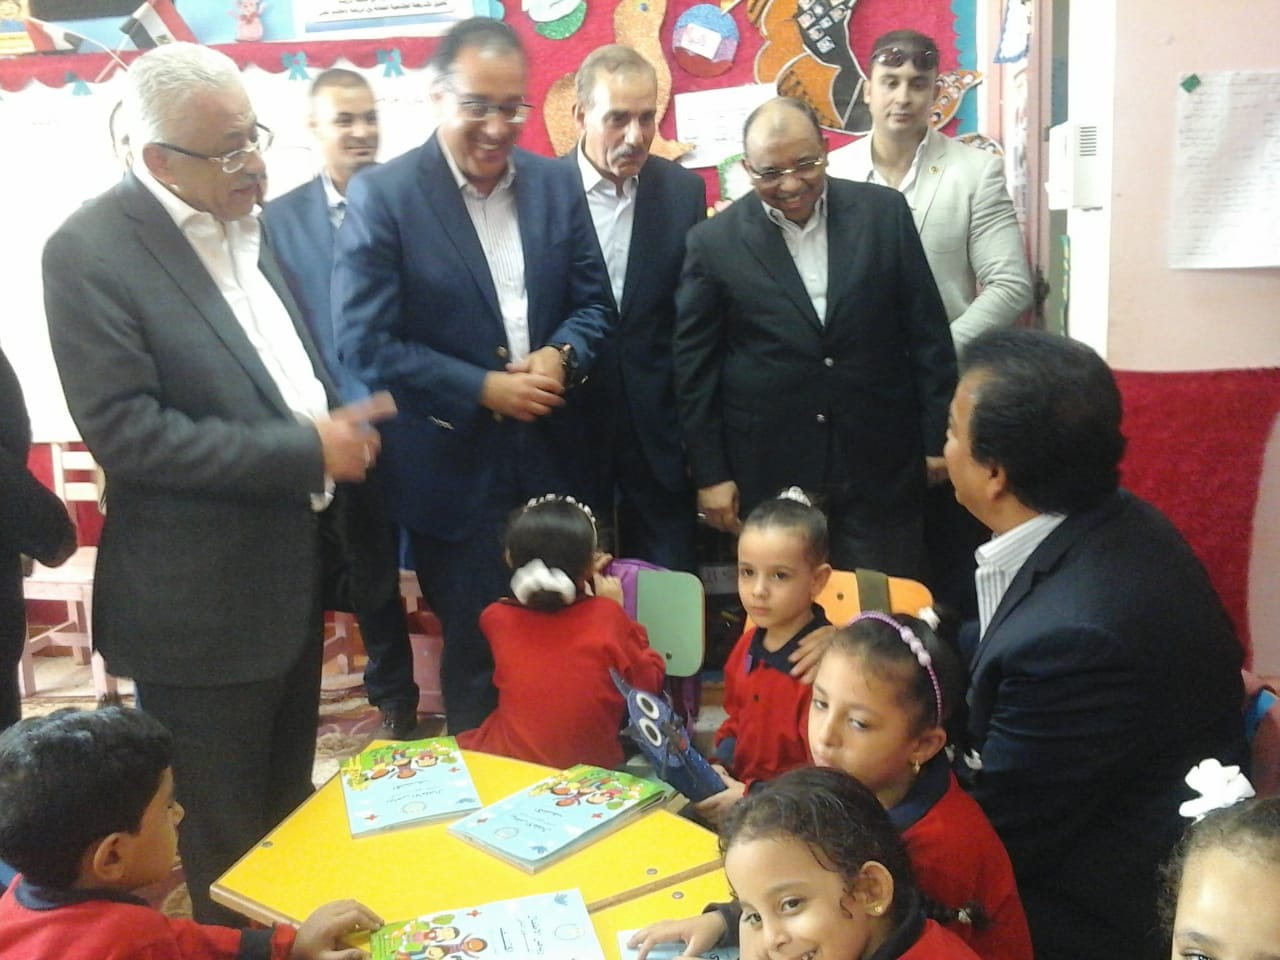   وزير التعليم العالي يتوسط مجموعة من رياض أطفال قائلًا: «نفسنا نرجع زيهم»